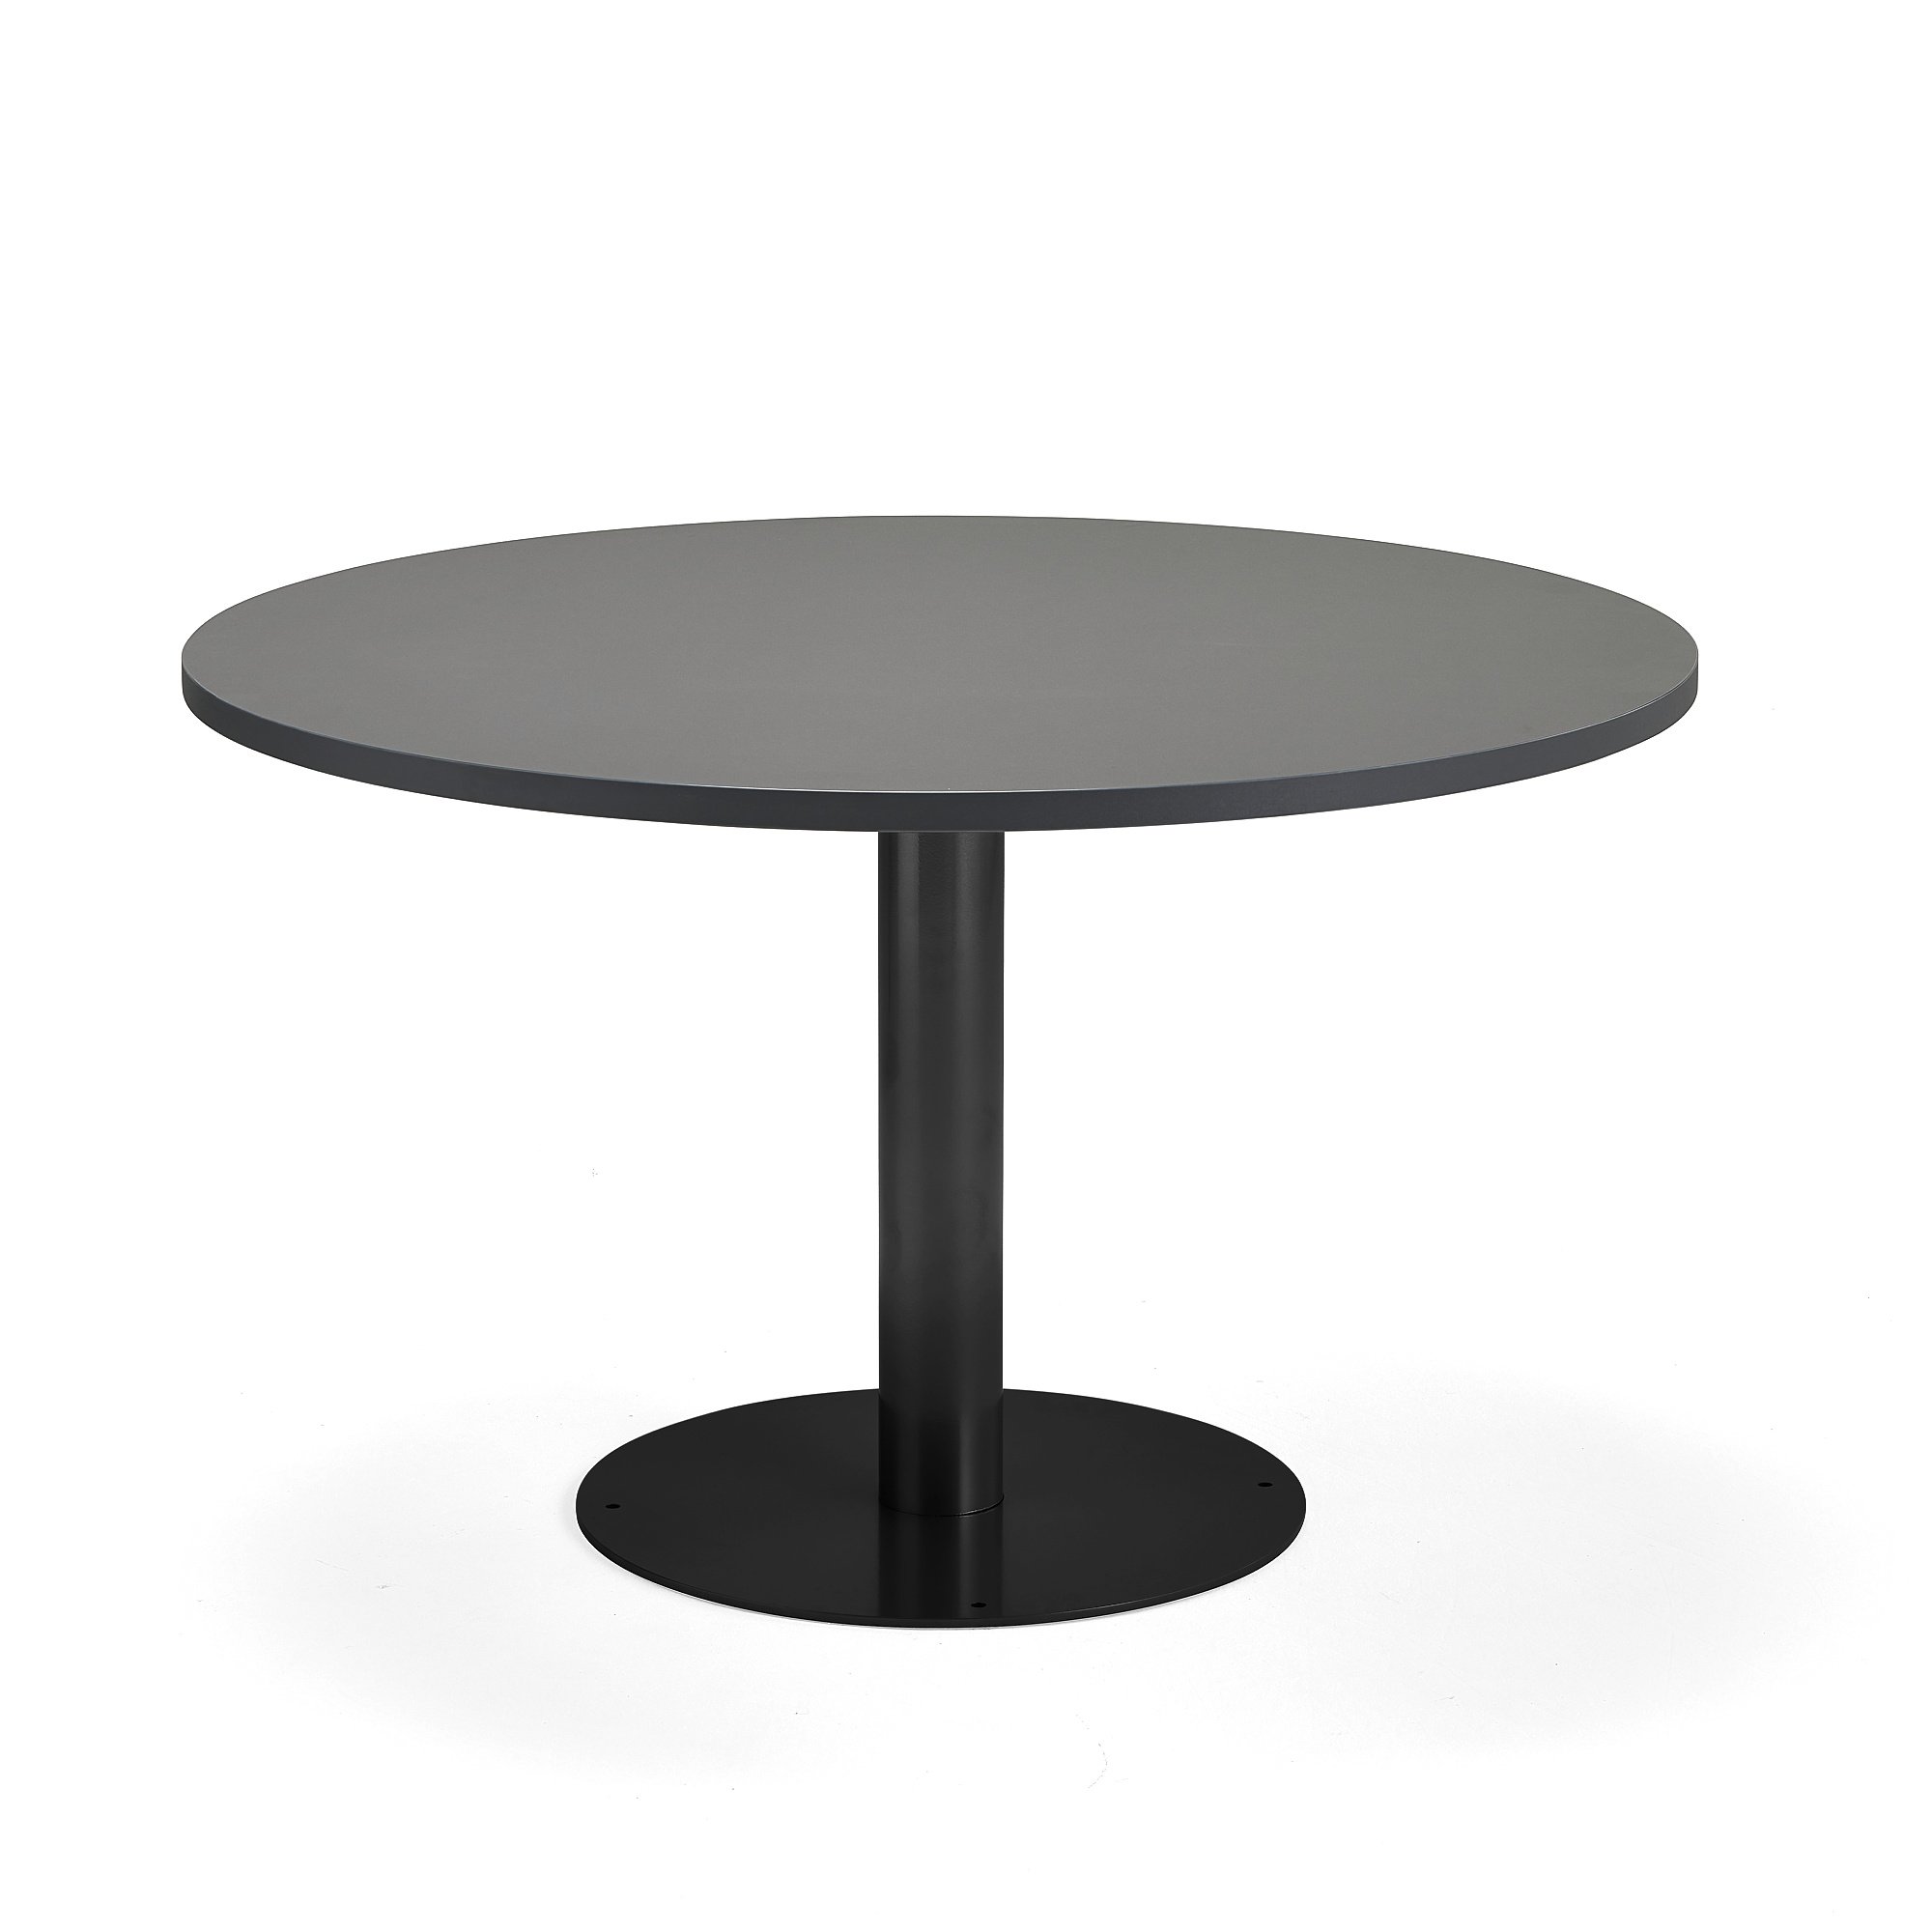 Stůl GATHER, Ø 900x720 mm, HPL laminát, antracitově šedá, antracitově šedá